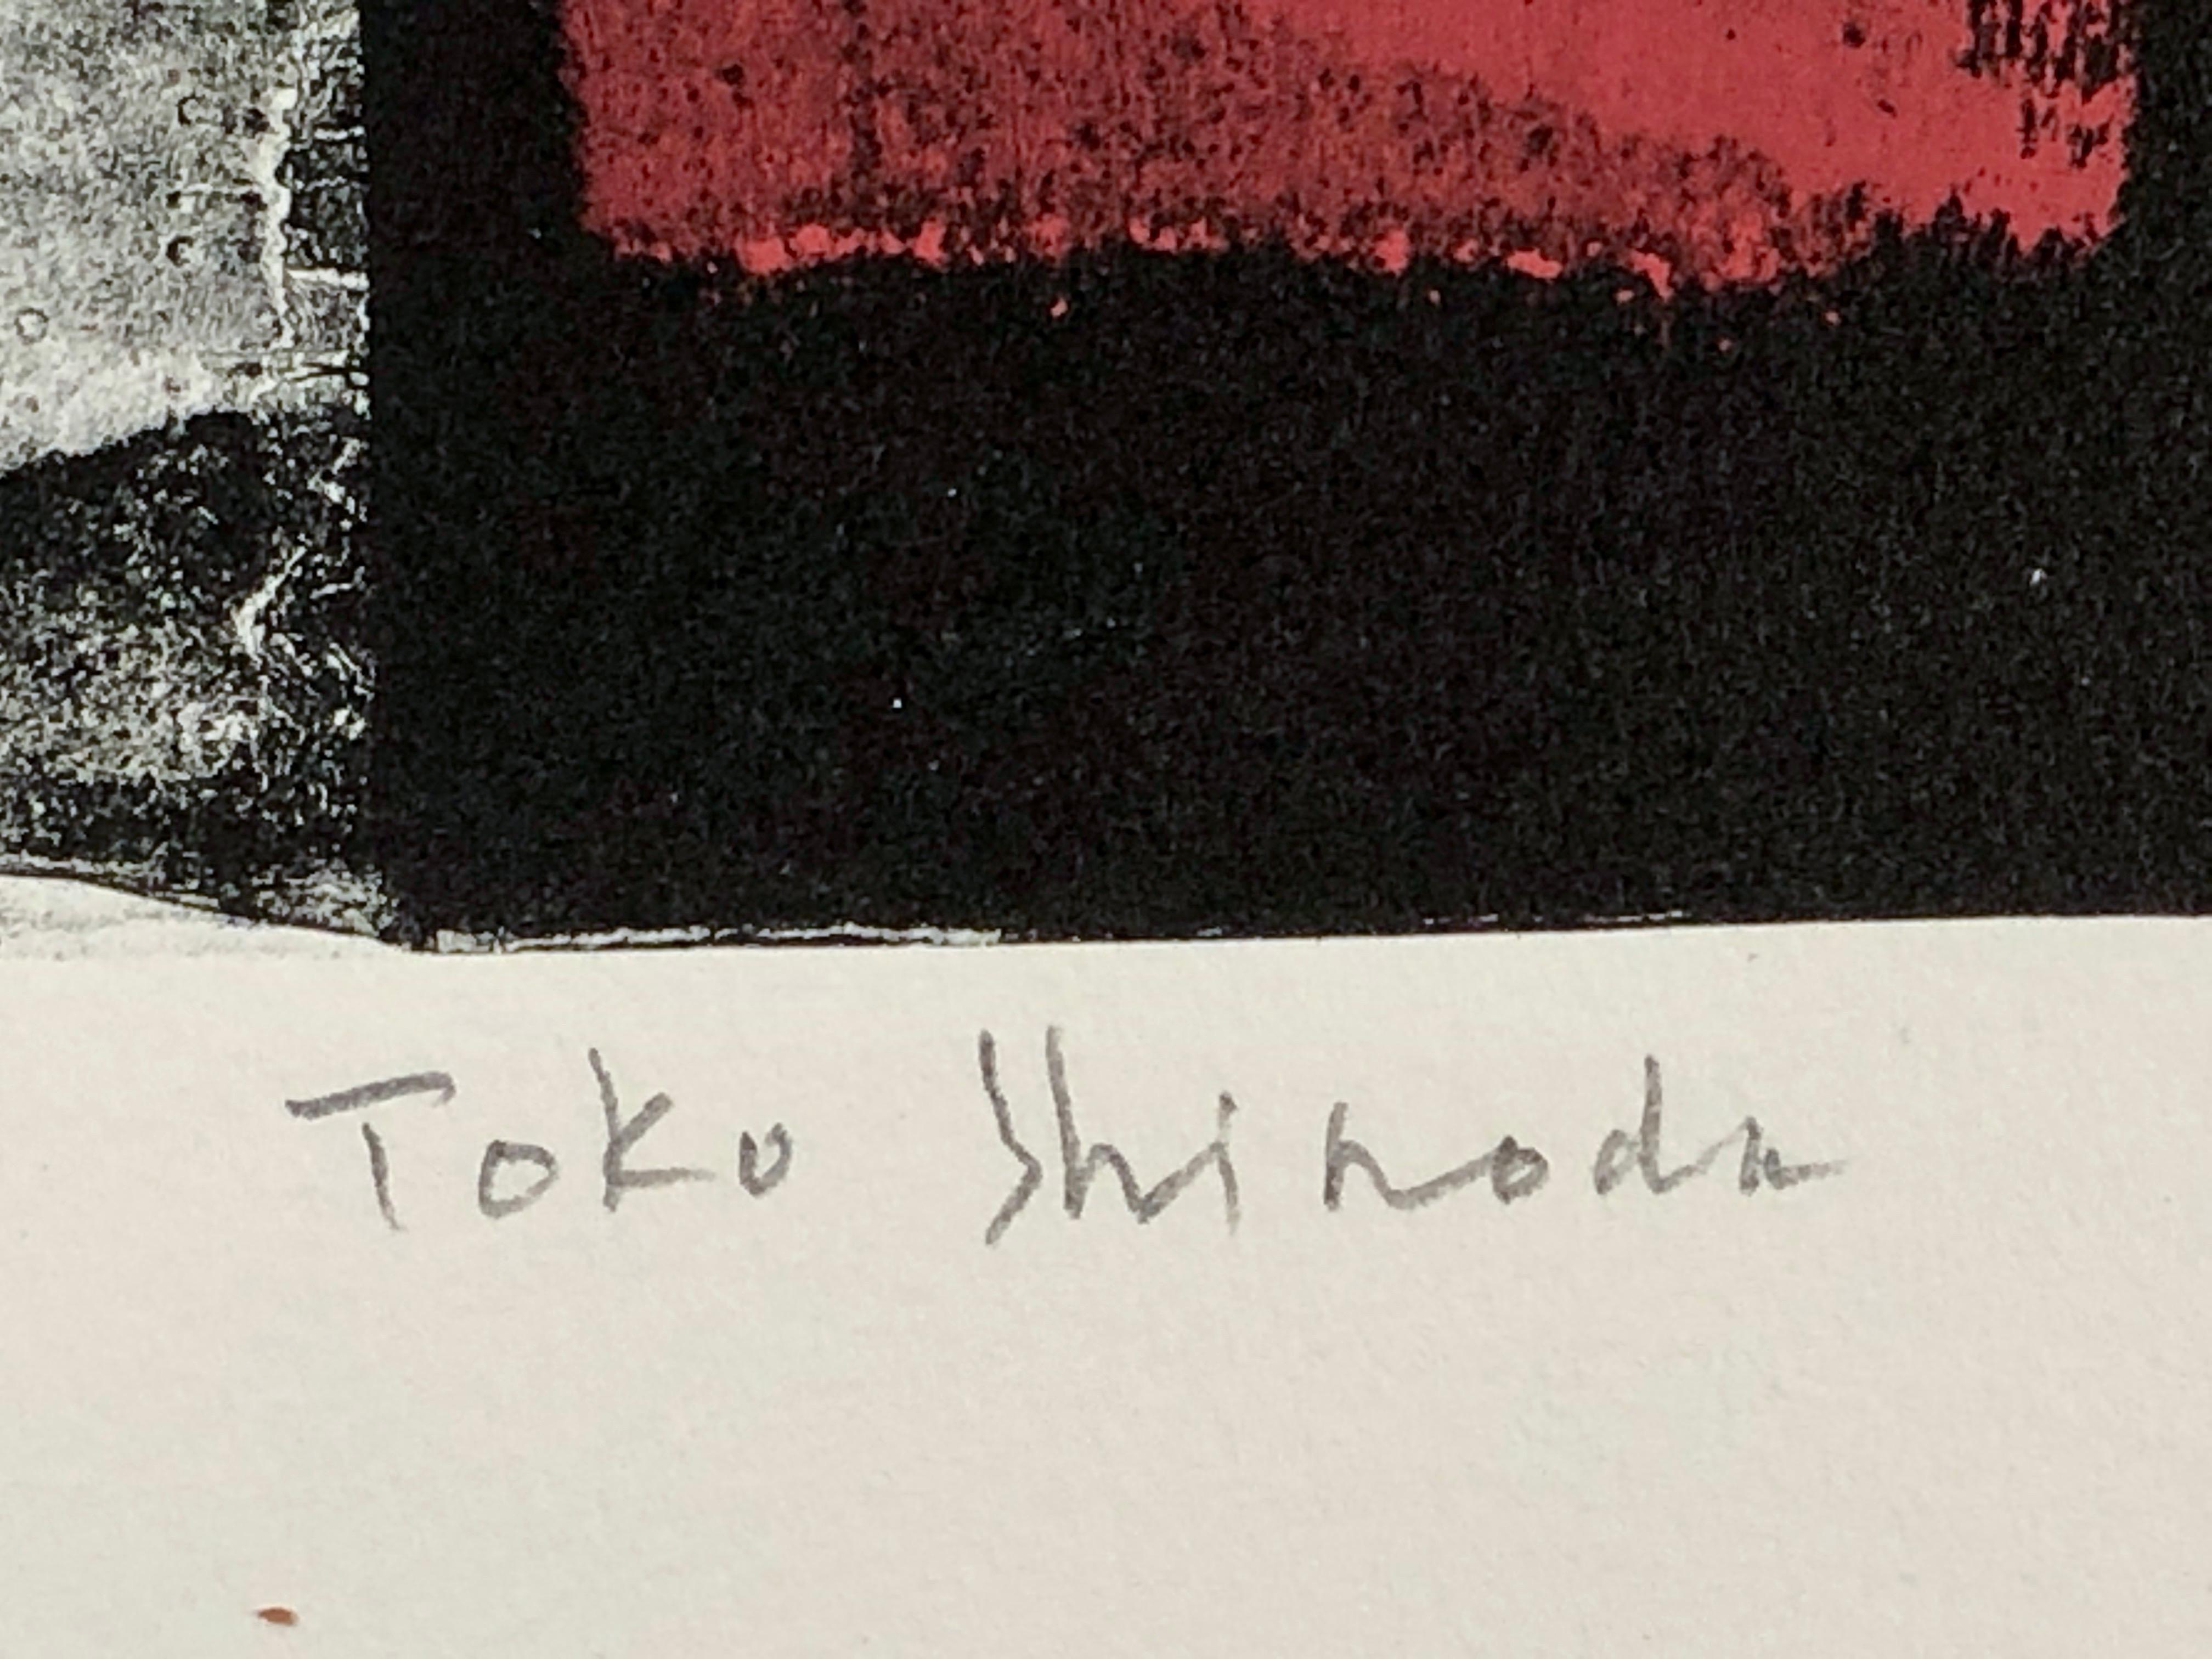 Tableau, japanisch, limitierte Auflage Lithographie, schwarz, weiß, rot, signiert, nummeriert

Shinodas Werke wurden von öffentlichen Galerien und Museen gesammelt, darunter das Museum of Modern Art, das Solomon R. Guggenheim Museum, das Brooklyn